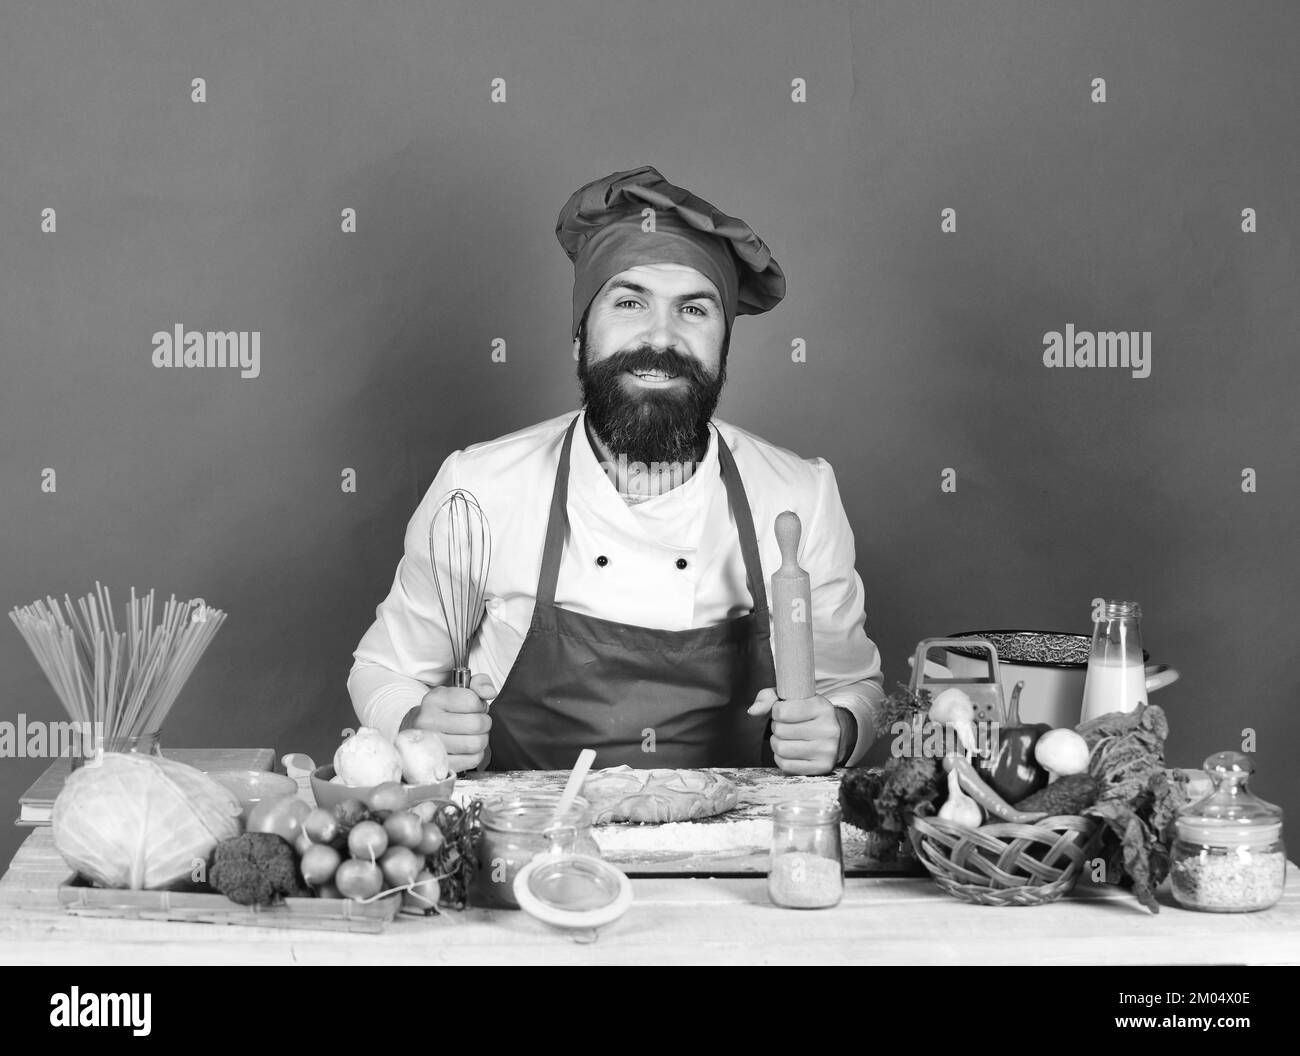 Concept de cuisine maison. Un homme avec une barbe est assis près d'un comptoir Banque D'Images